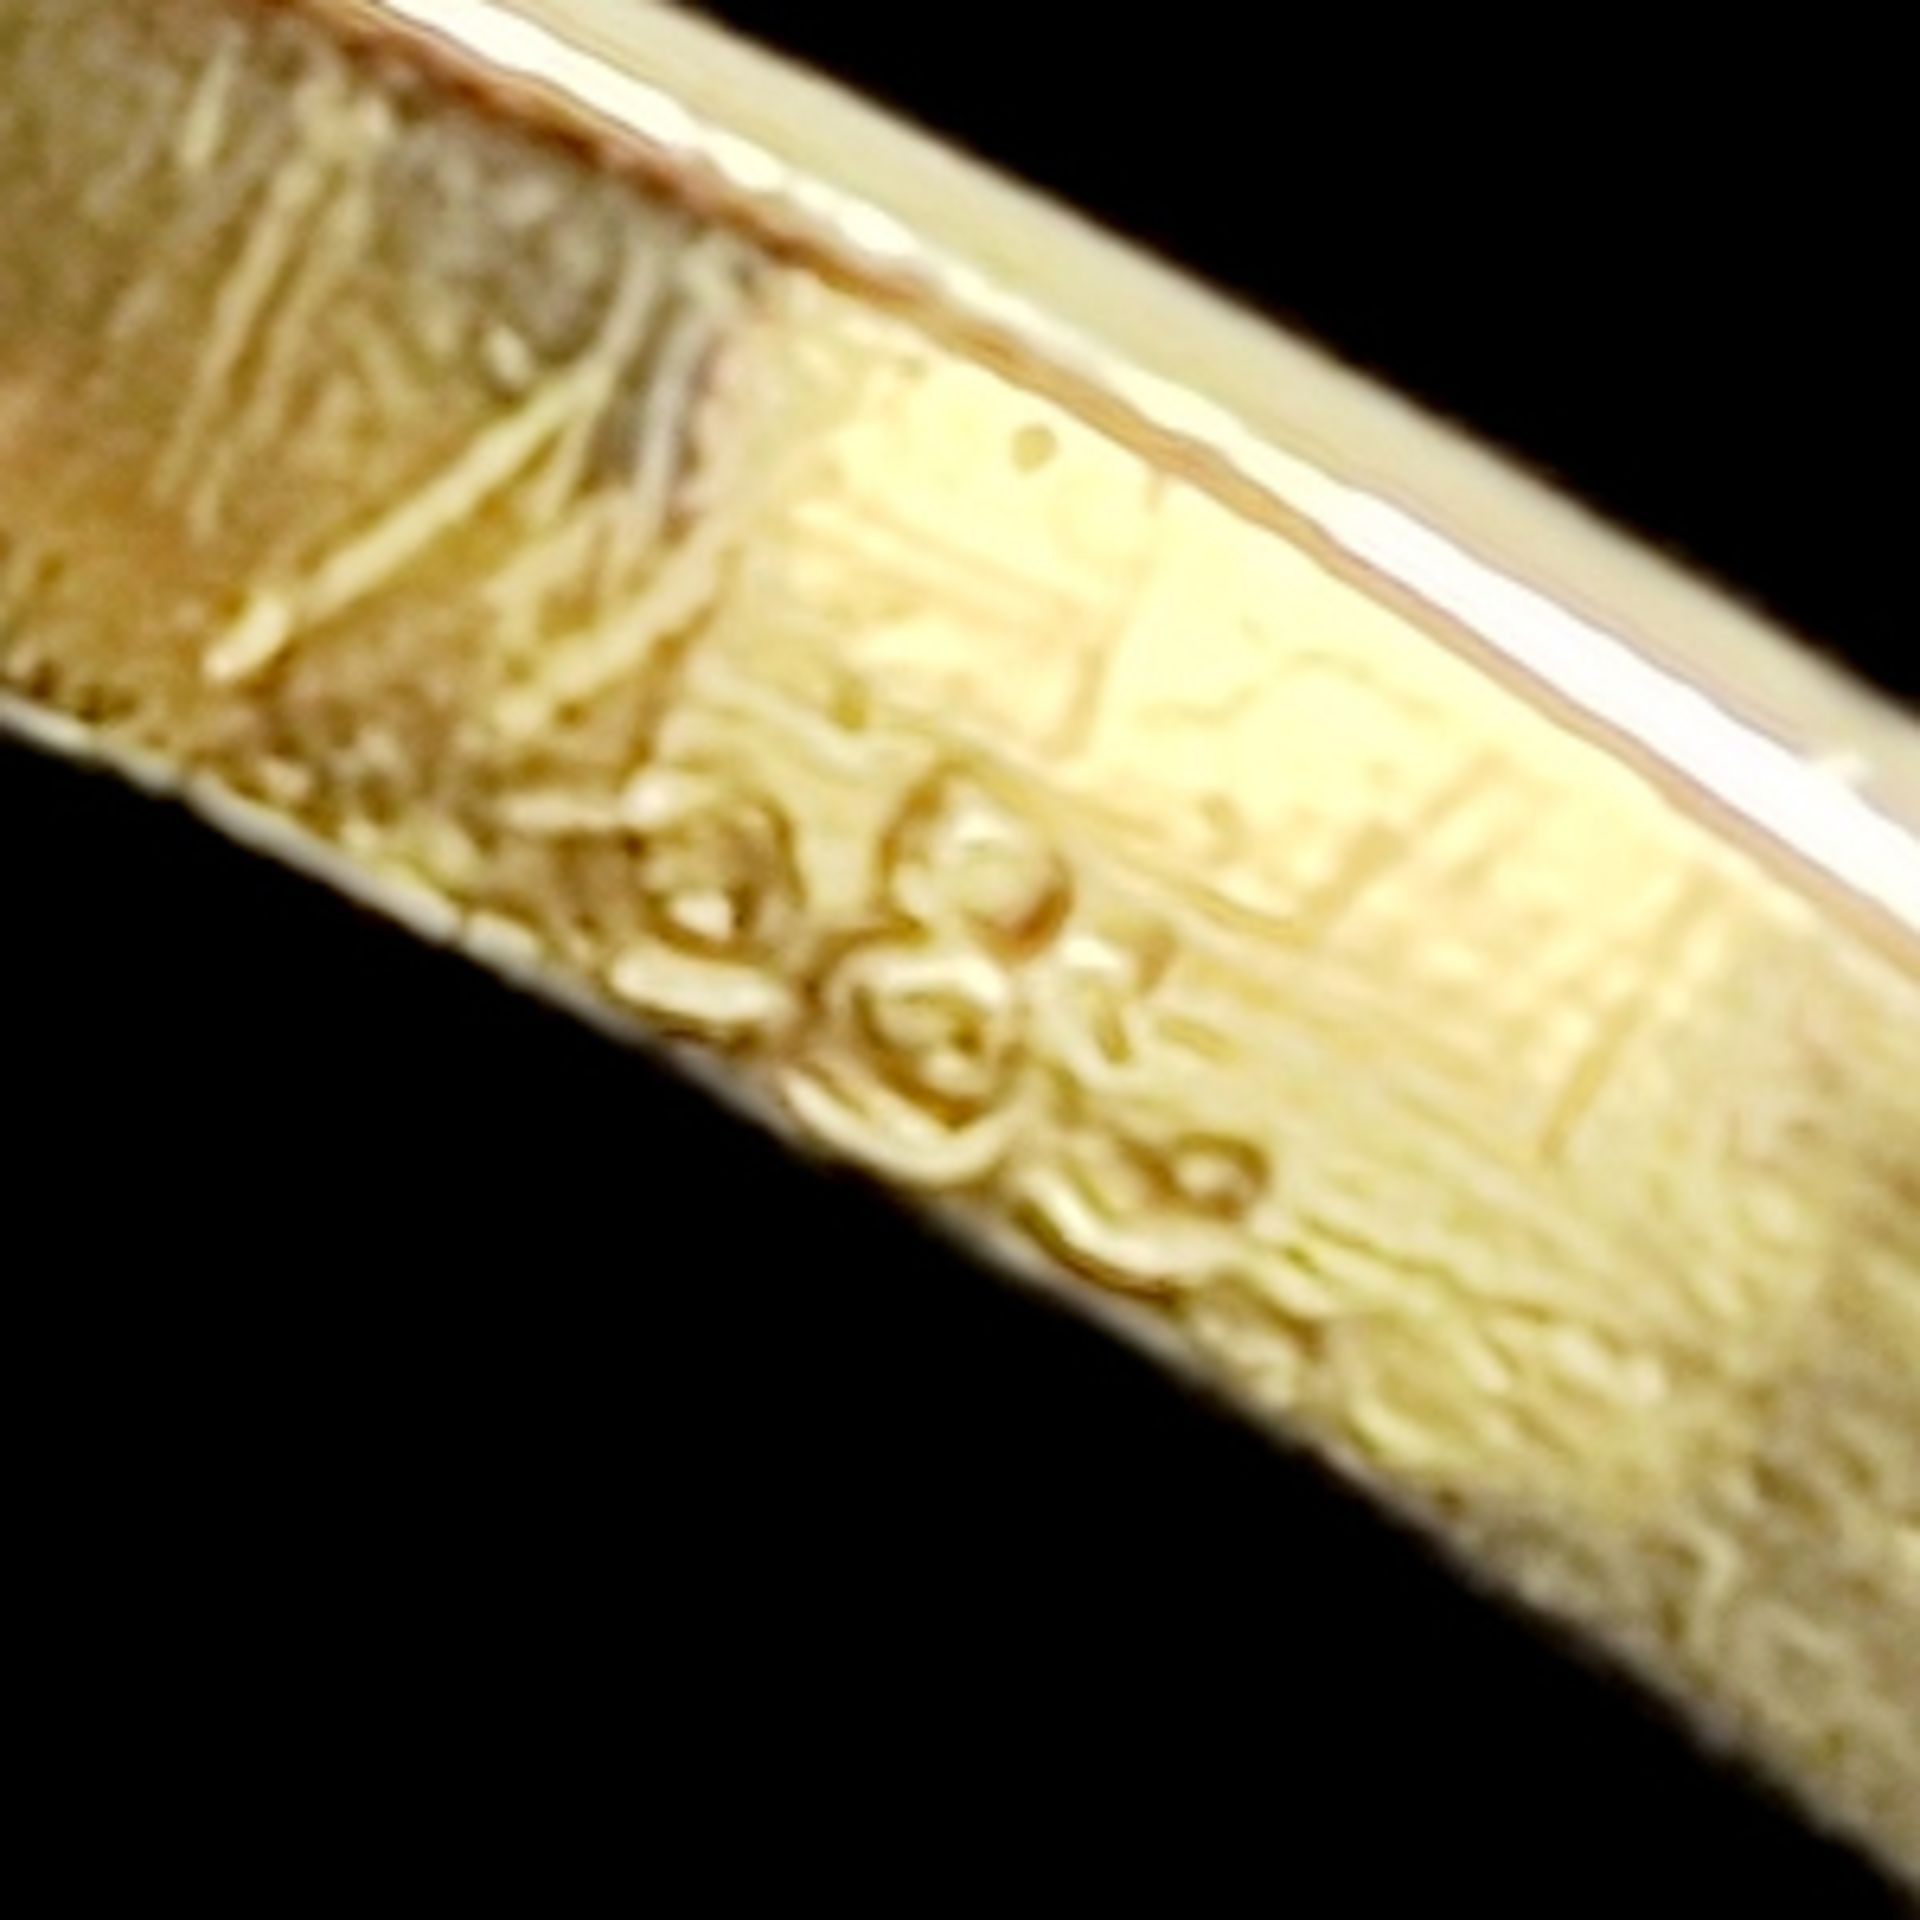 Art Deco Ring, 585/14K Gelbgold (punziert), 3g, oktagonaler, durchbrochen gearbeiteter Ringkopf mit - Bild 3 aus 3